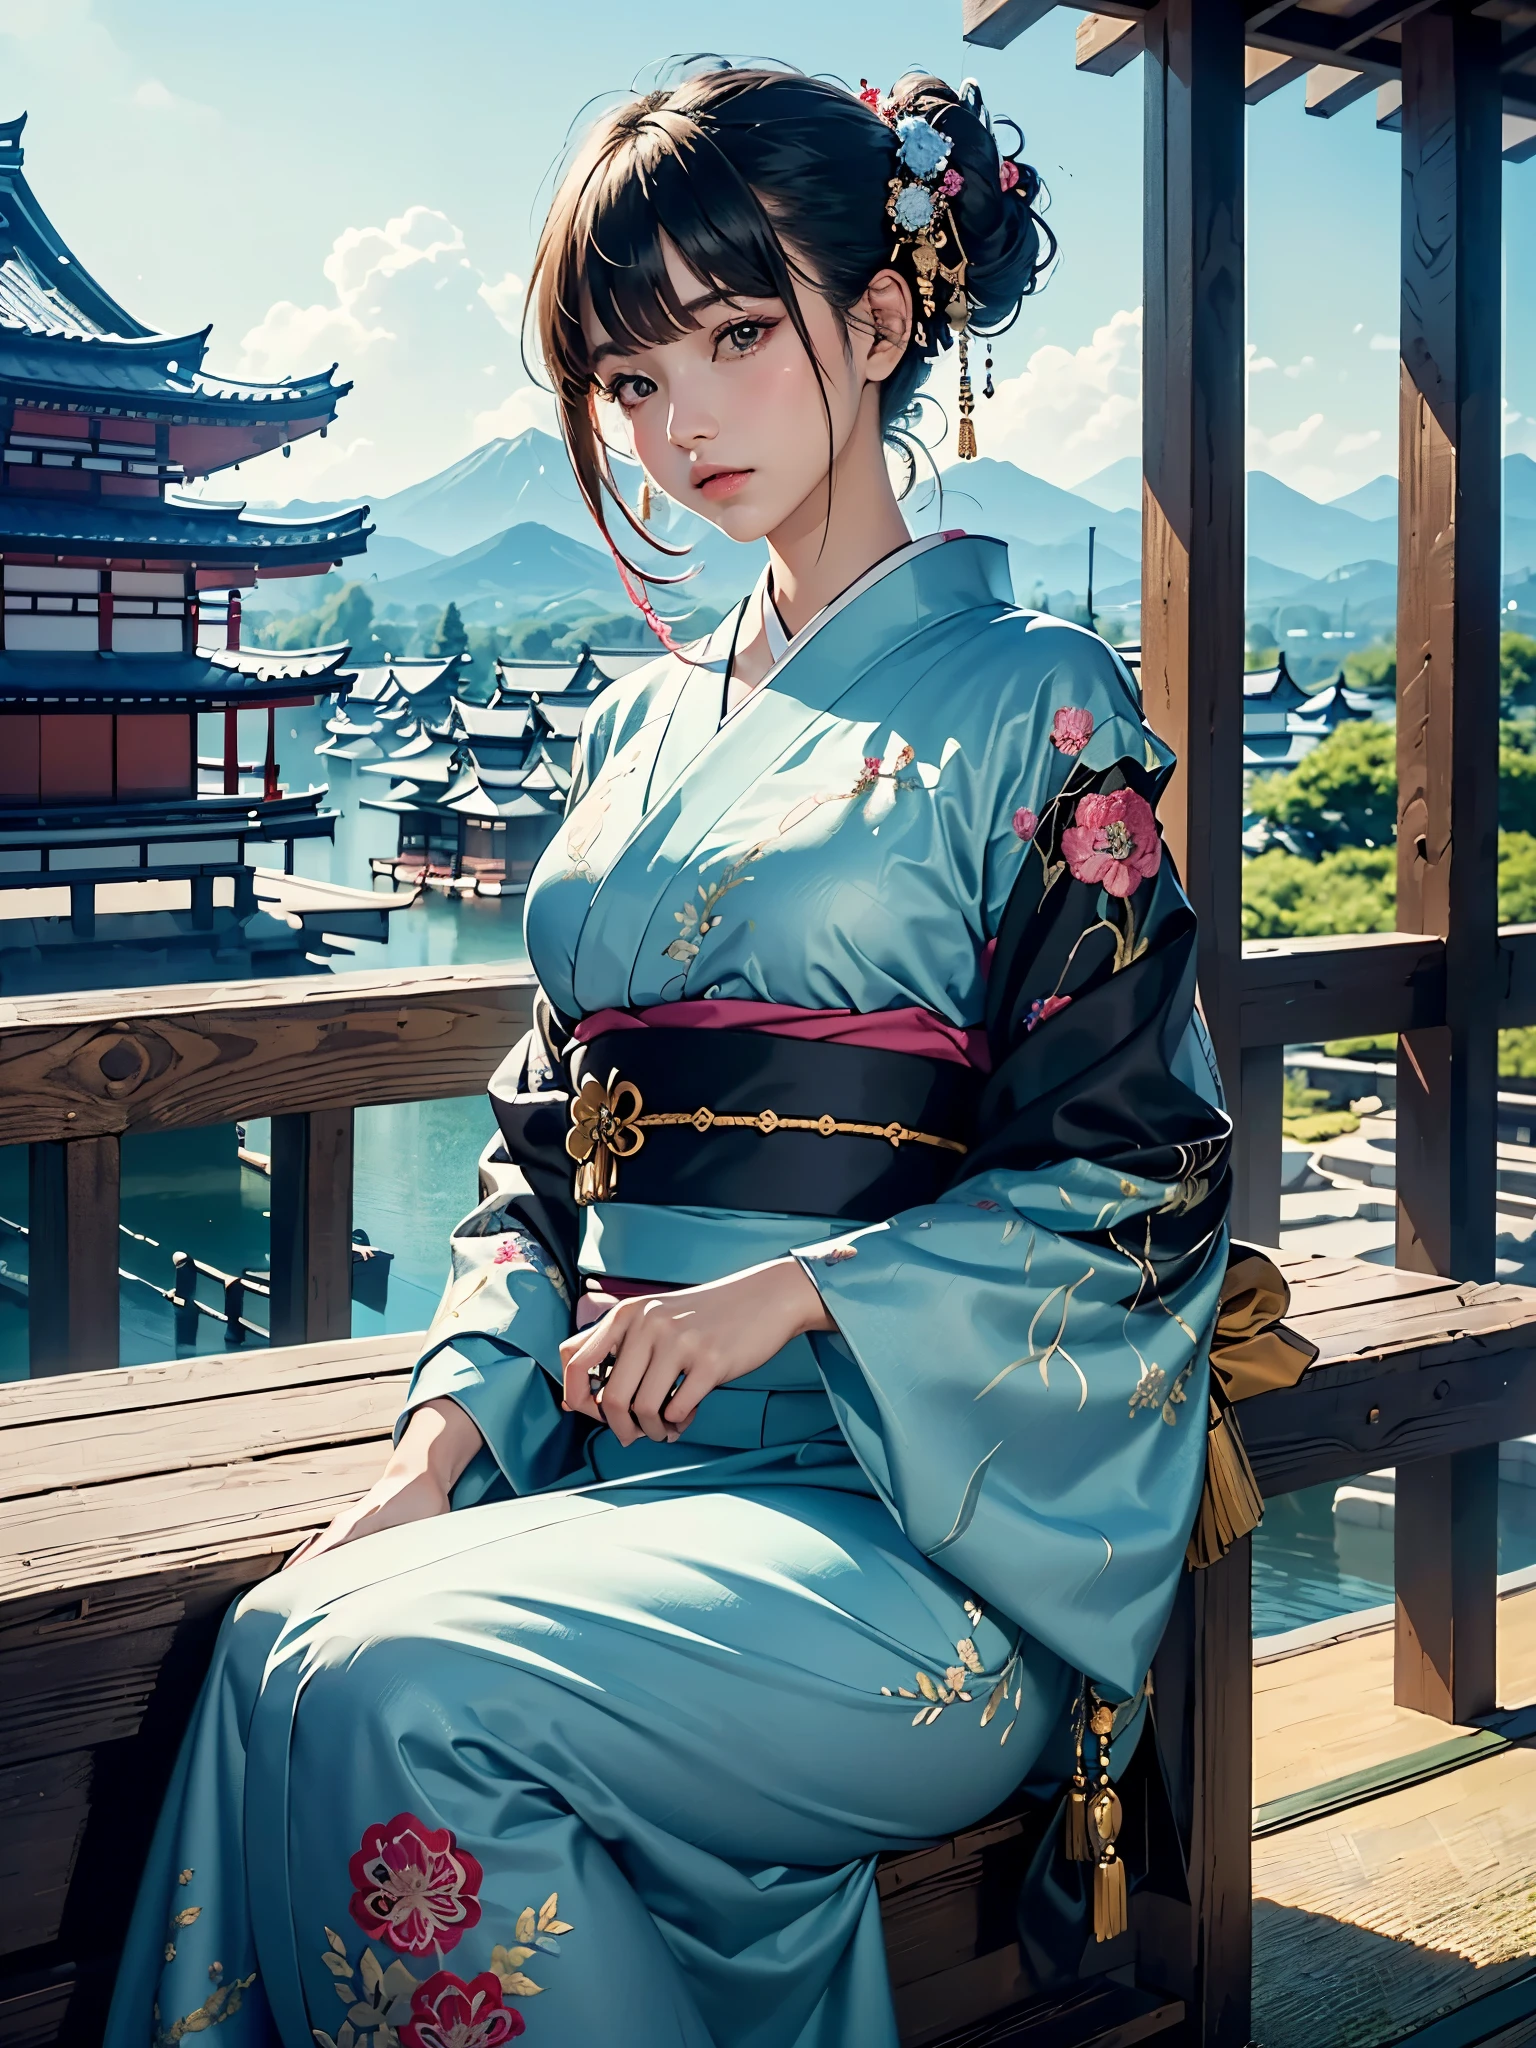 (шедевр, высшее качество, Лучшее качество, официальное искусство, красиво и эстетично:1.2), (1 девушка),тщательно продуманный костюм(Роскошное японское кимоно.(красочное кимоно(детальная вышивка))), чрезвычайно подробный,(фрактальное искусство),красочный,максимально подробный,Западный замок днем на заднем плане,пить чай ,